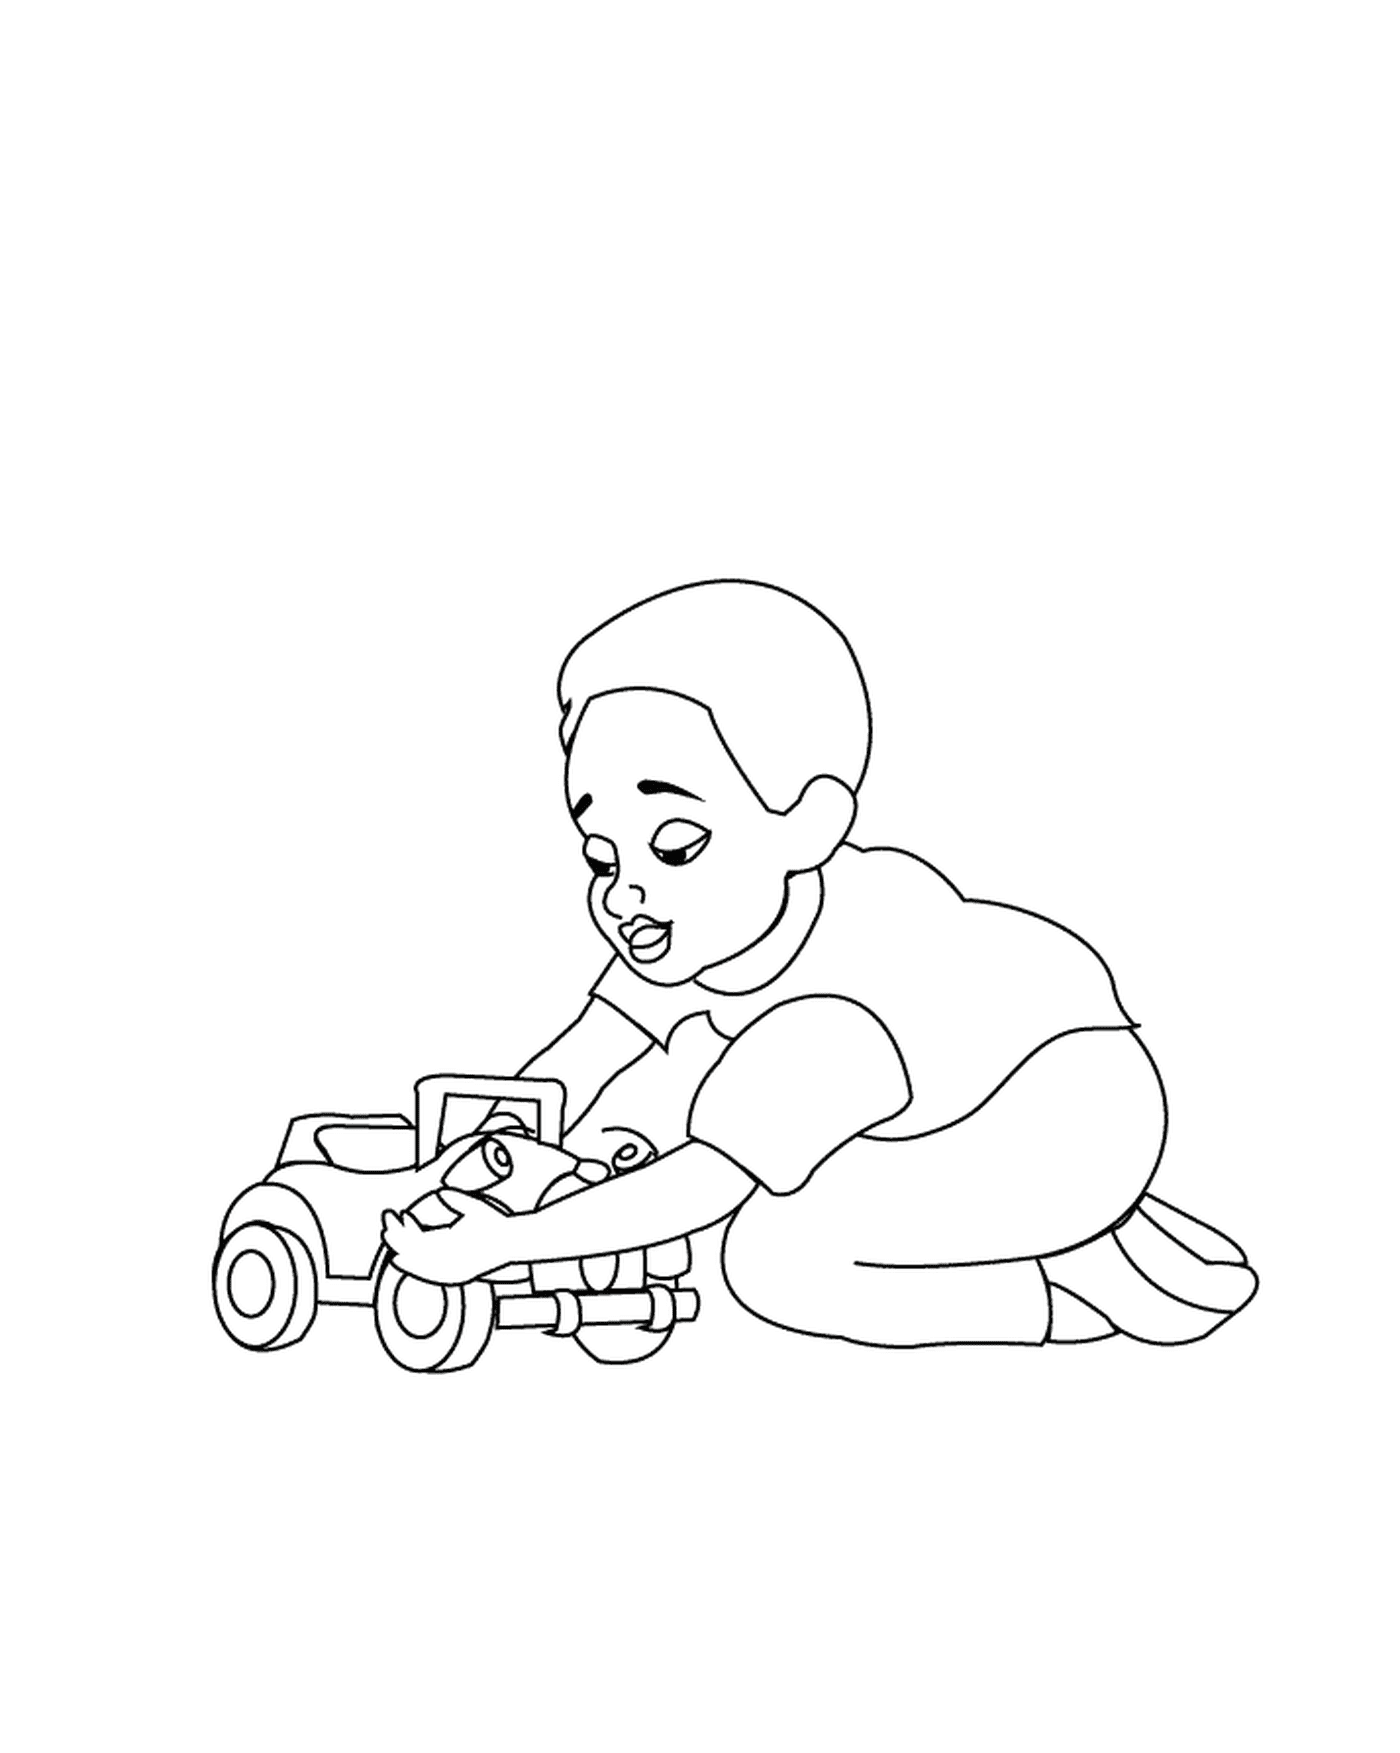   Un enfant joue avec une voiture-jouet 